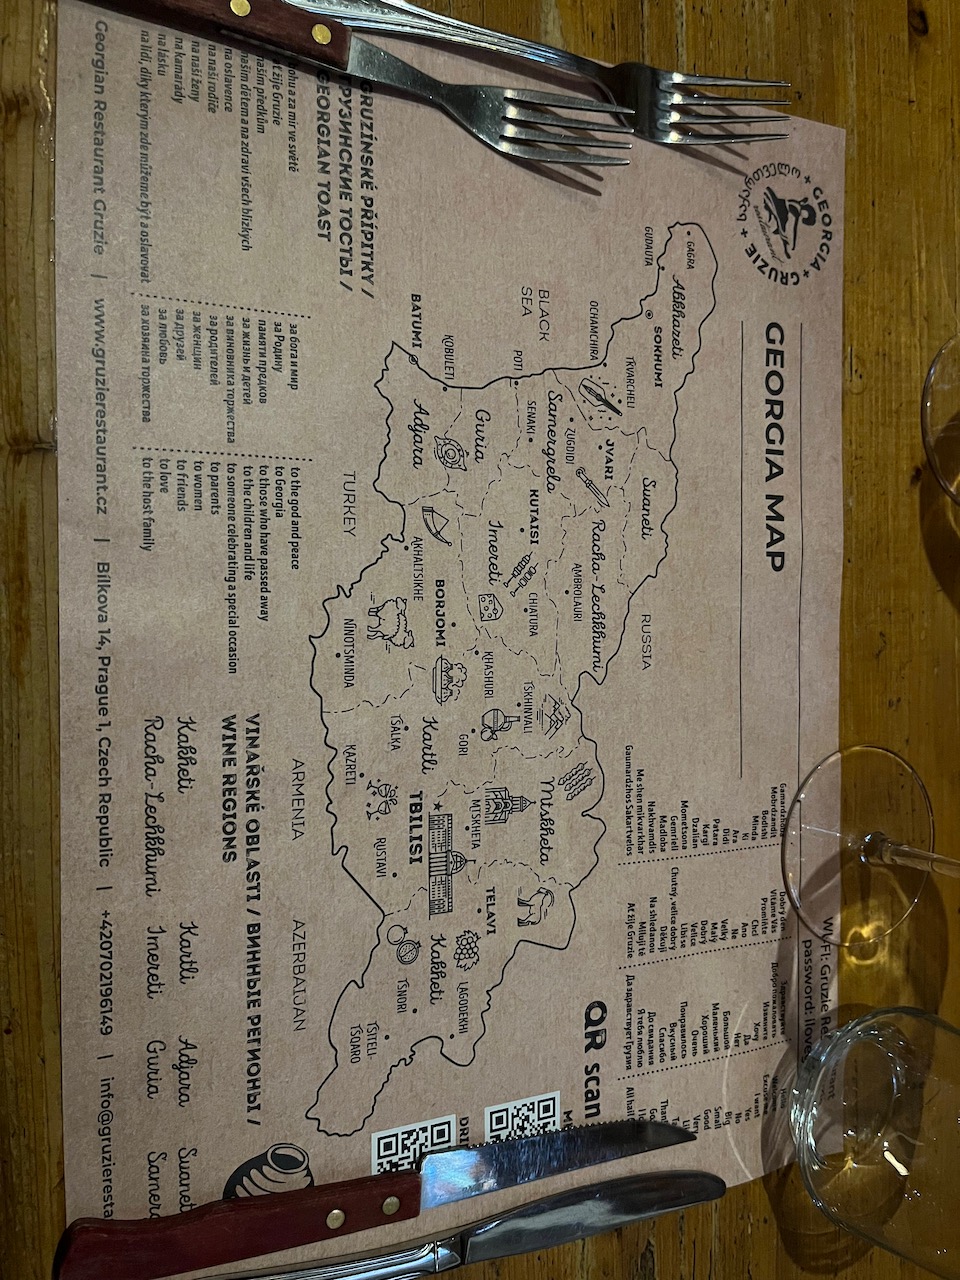 Gruzie restaurant - paper information leaflet